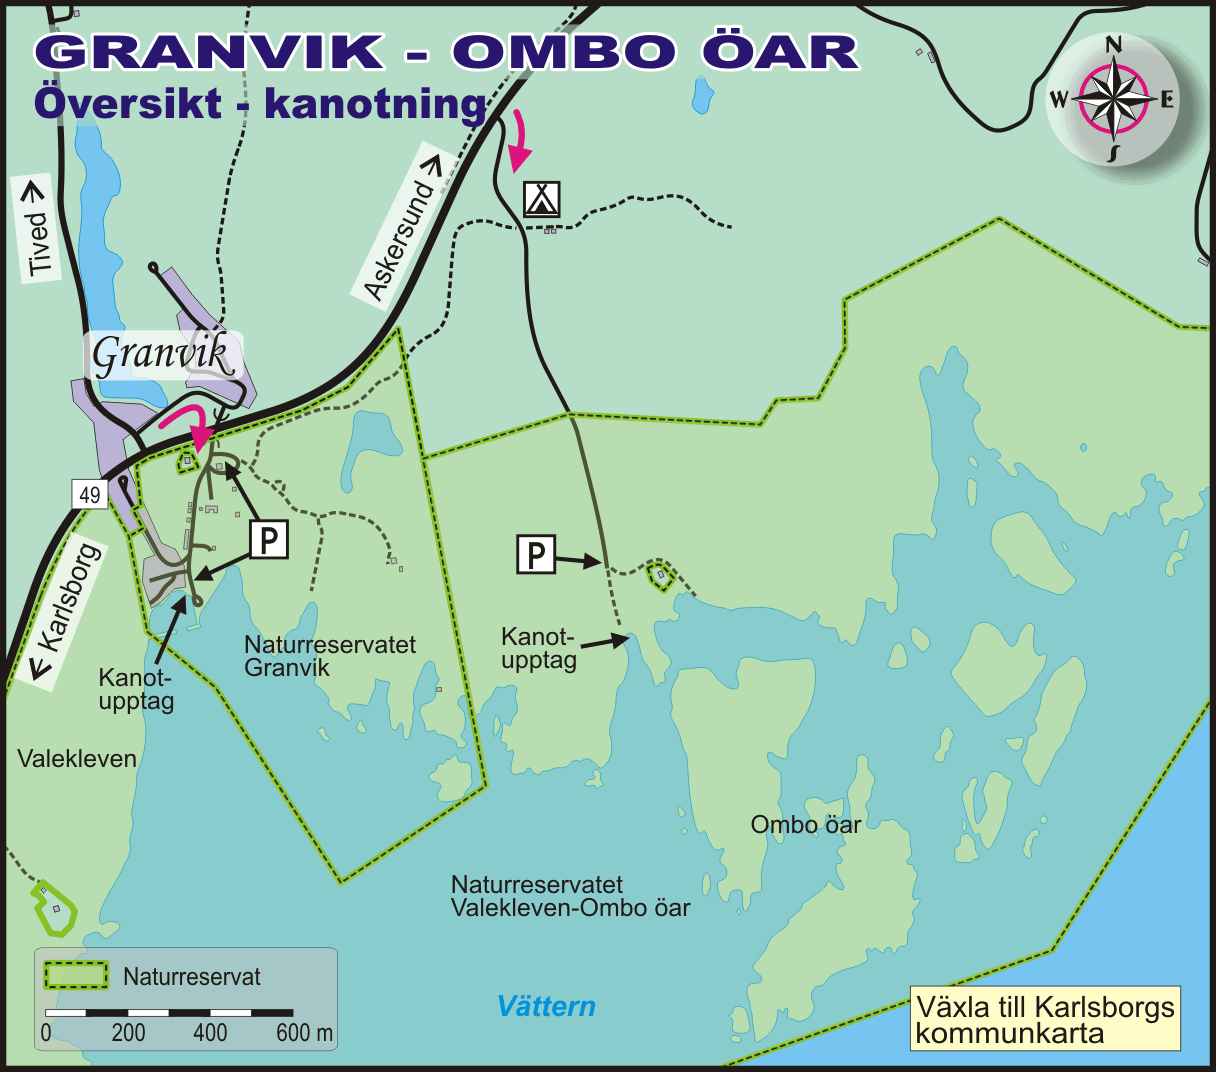 Granvik-Ombo öar - kanotning - Skaraborgsleder